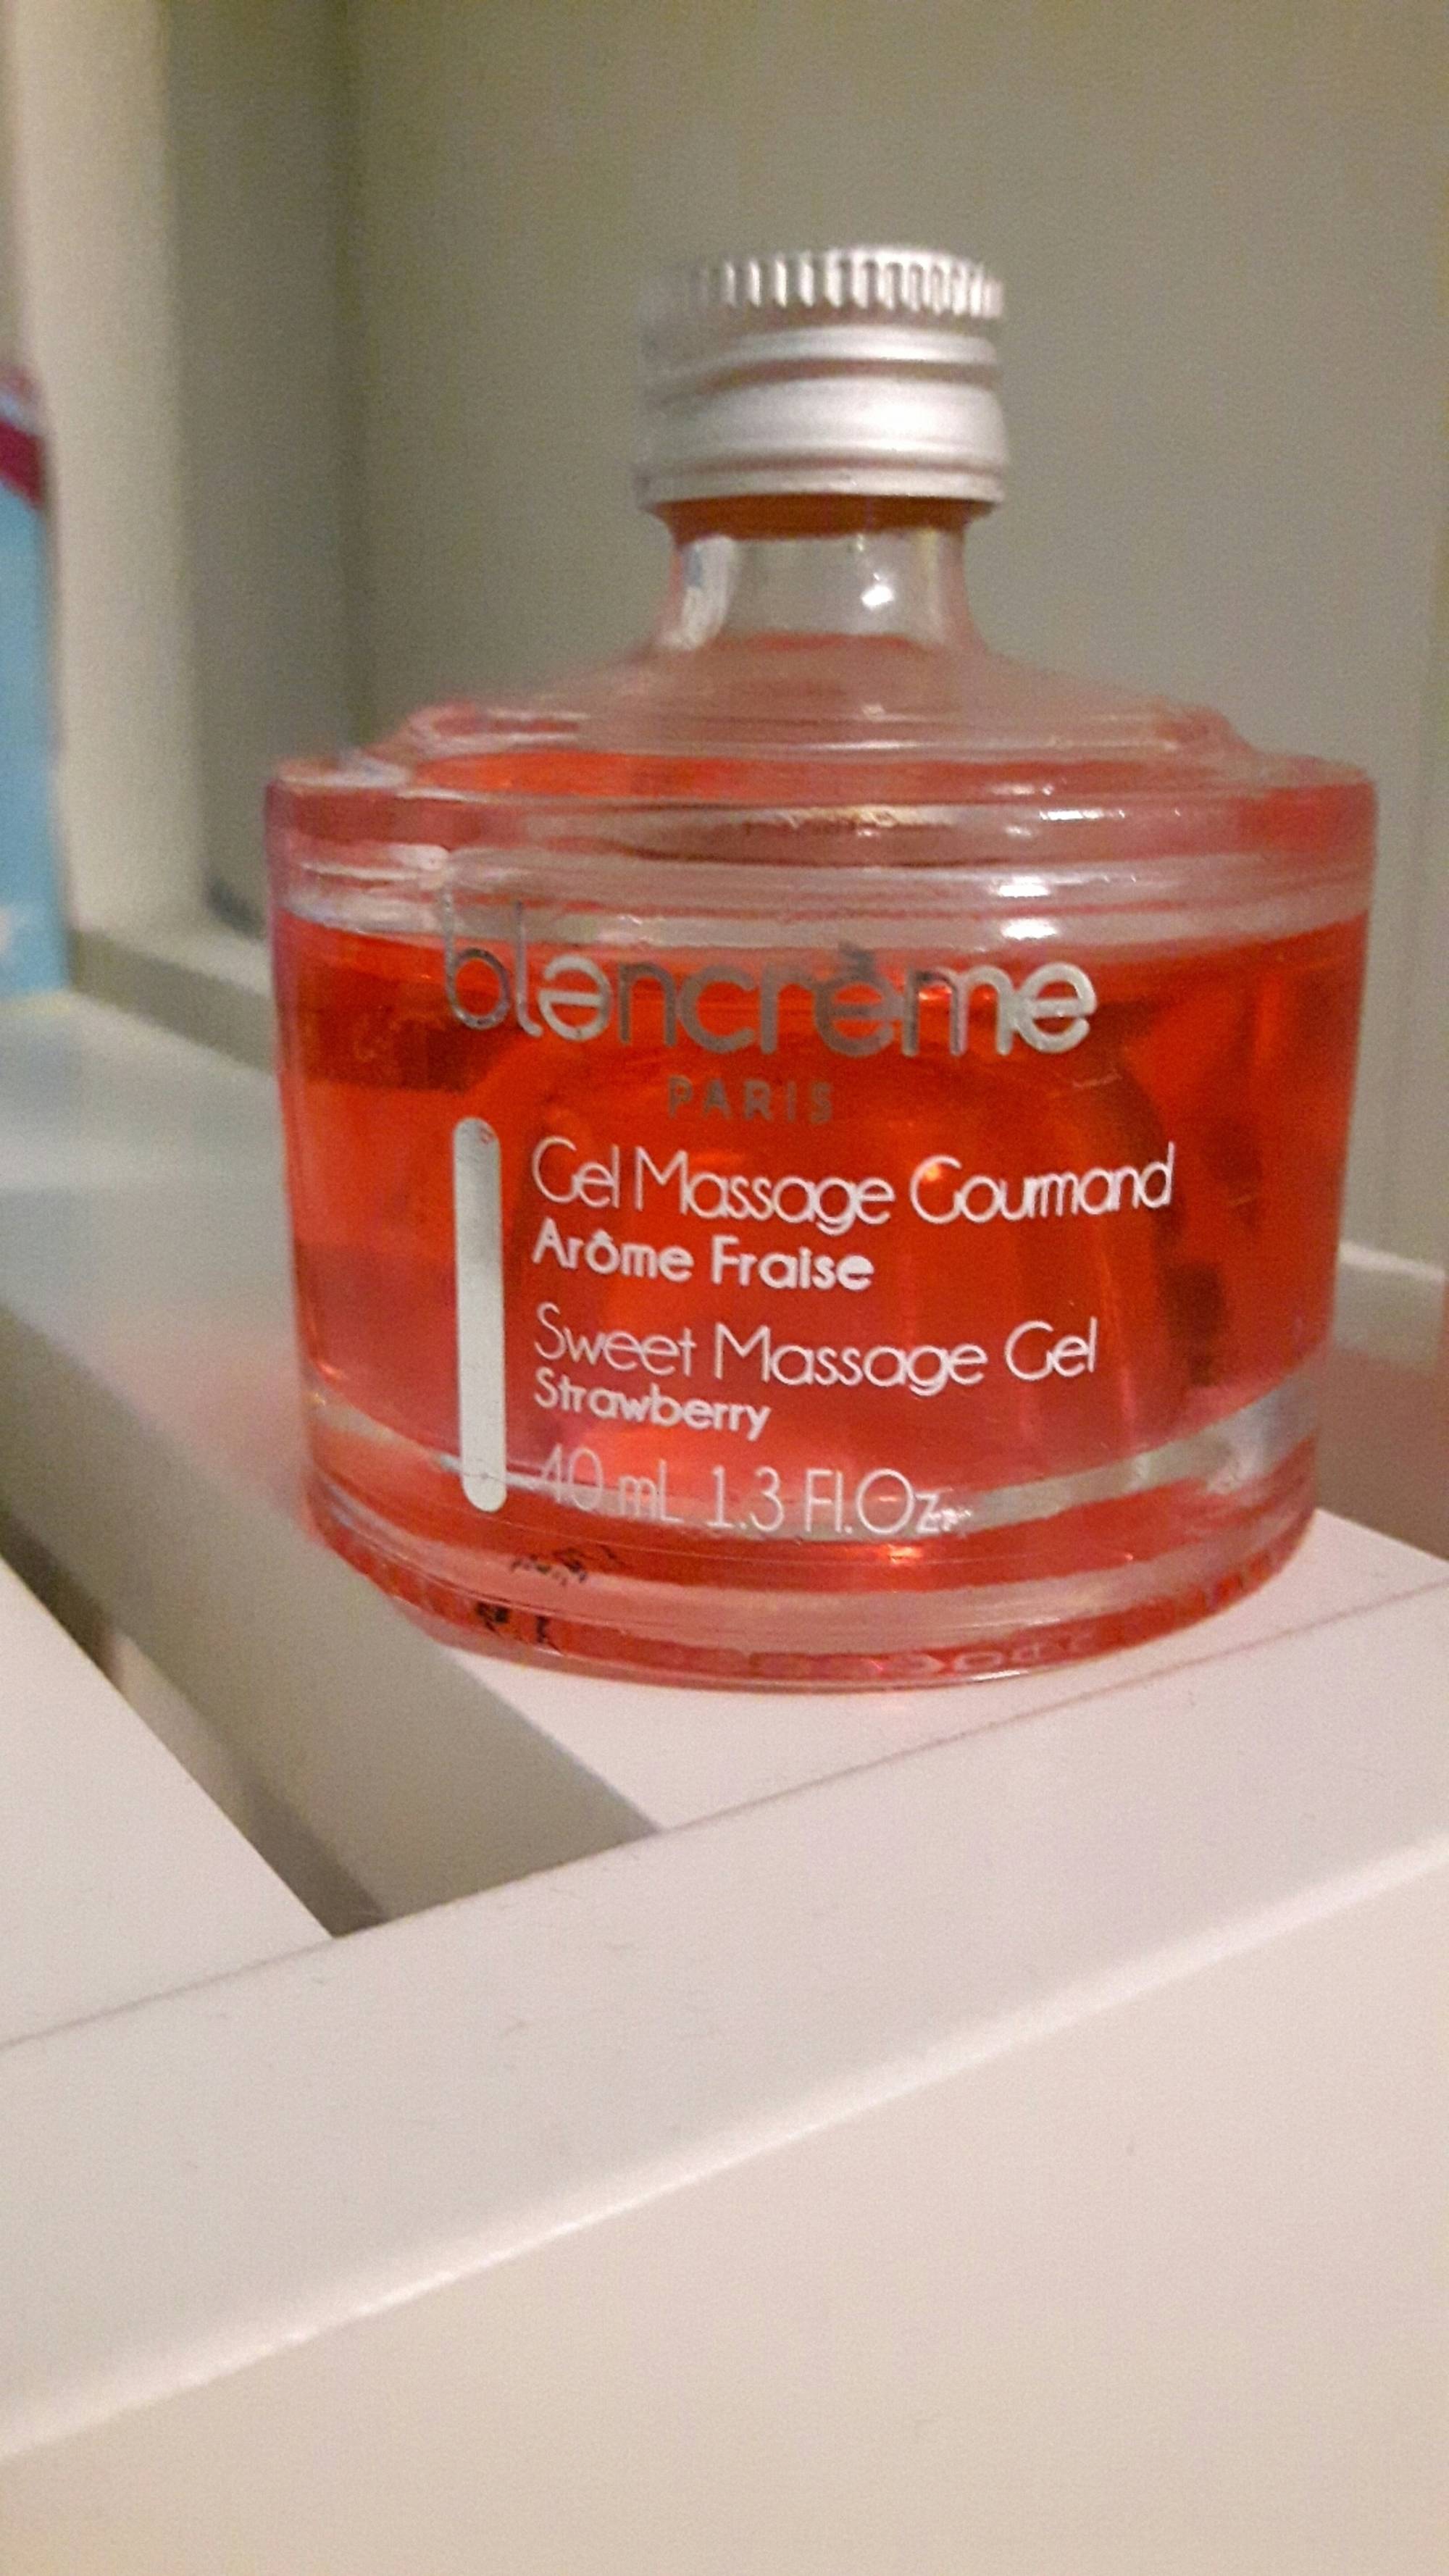 BLANCRÈME - Gel massage gourmand arôme fraise